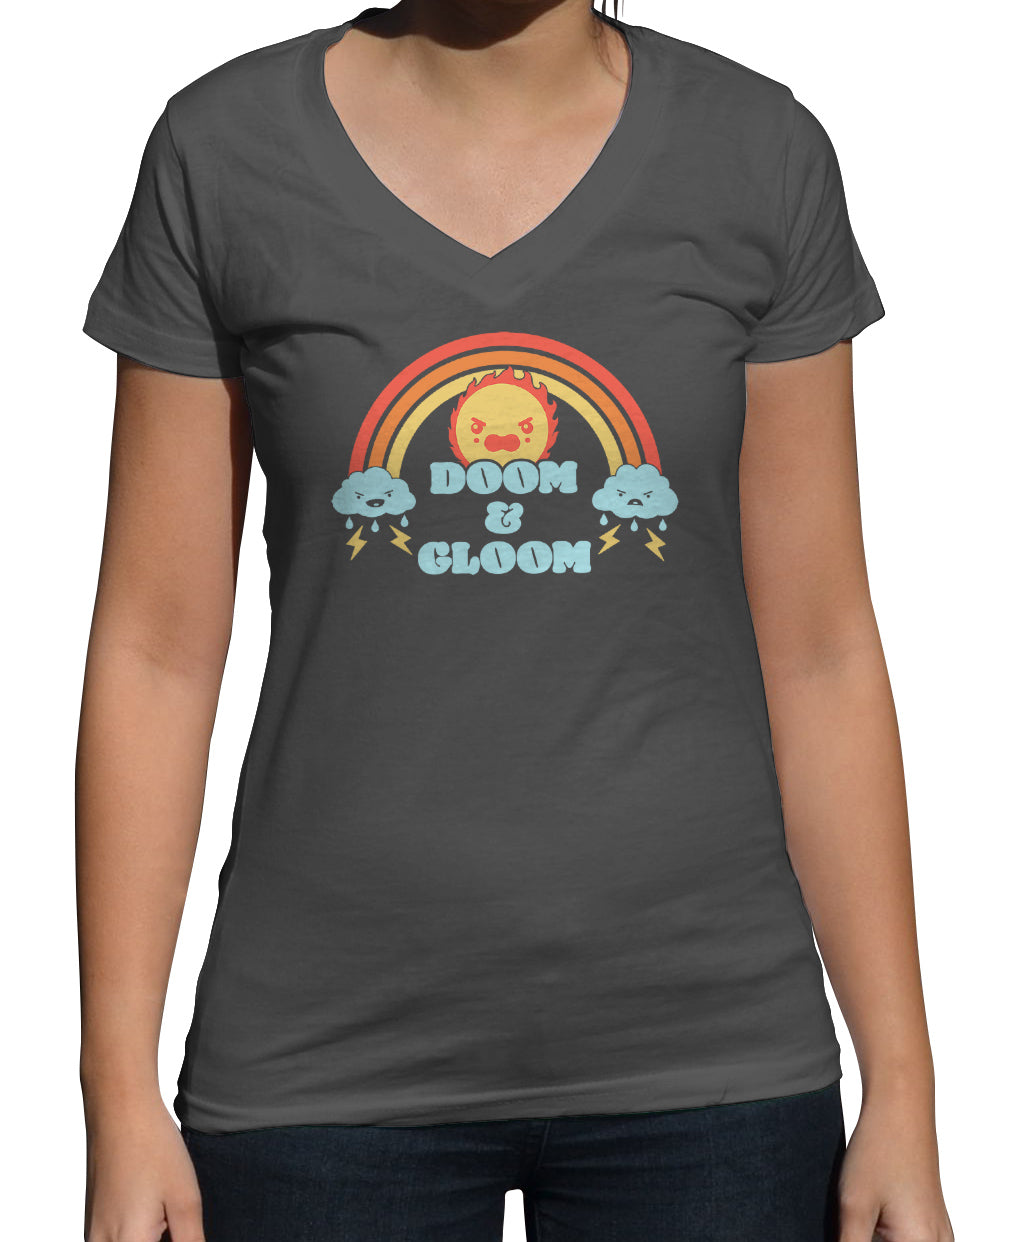 Women's Doom and Gloom Vneck T-Shirt